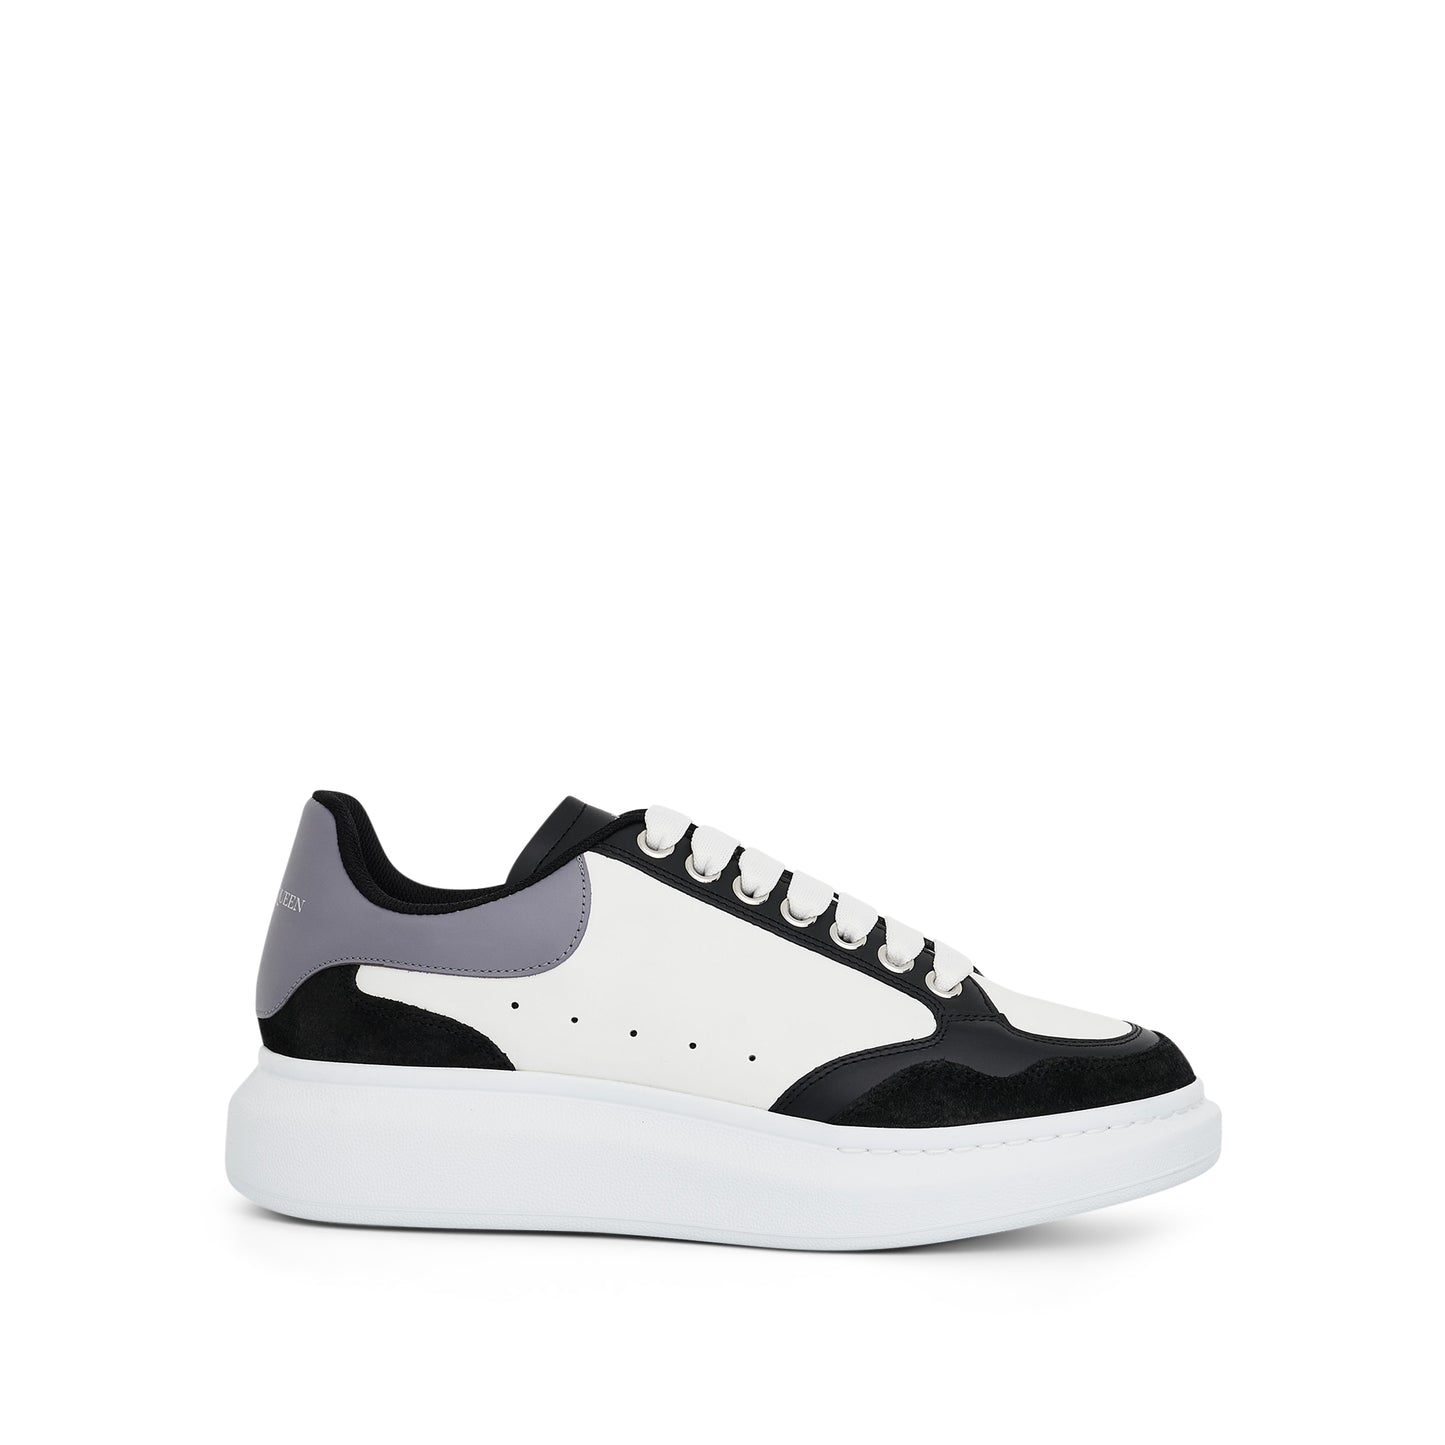 Larry Oversized Sensory Sneaker in Black/White